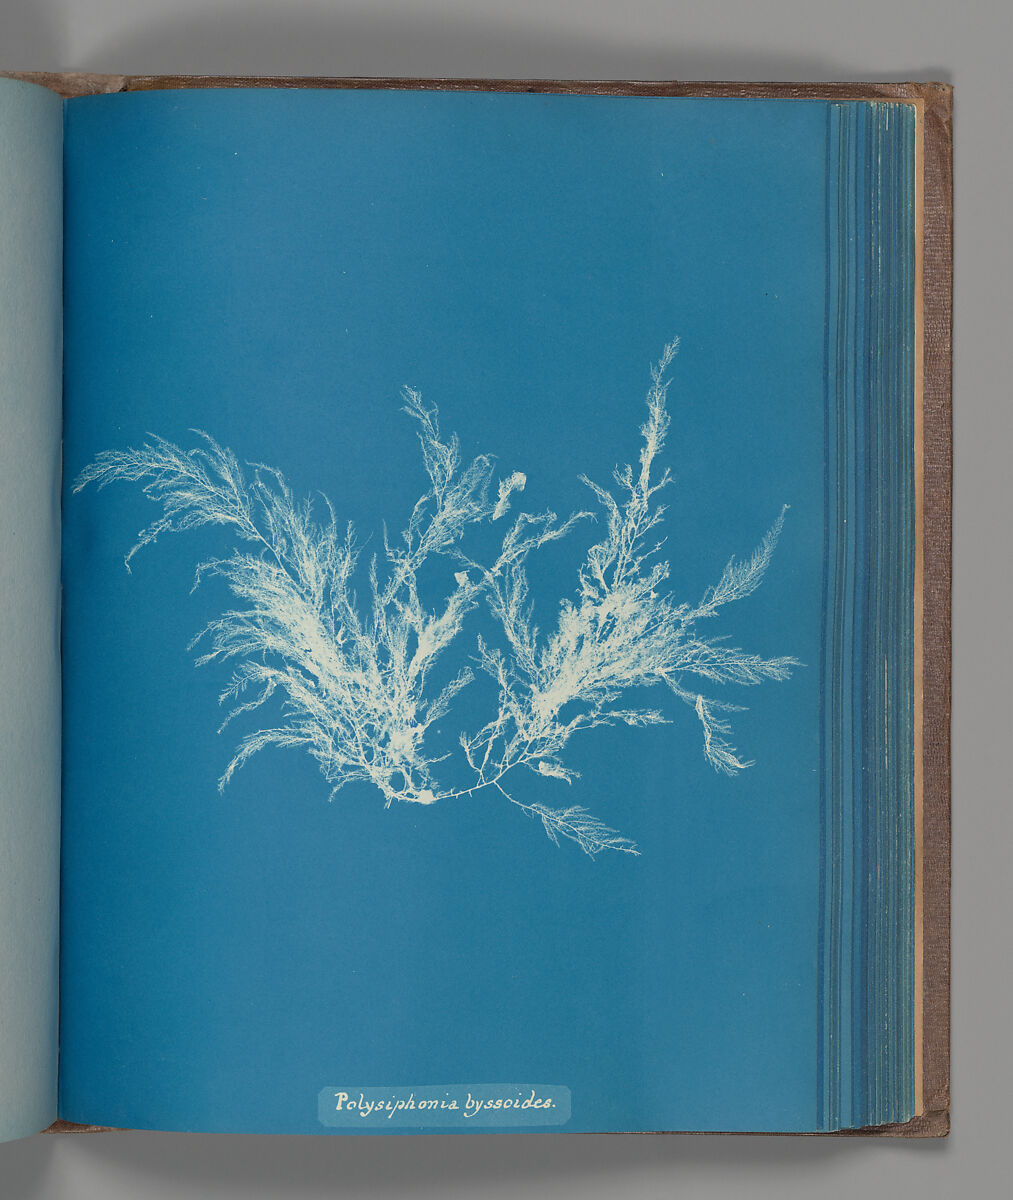 Polysiphonia byssoides, Anna Atkins (British, 1799–1871), Cyanotype 